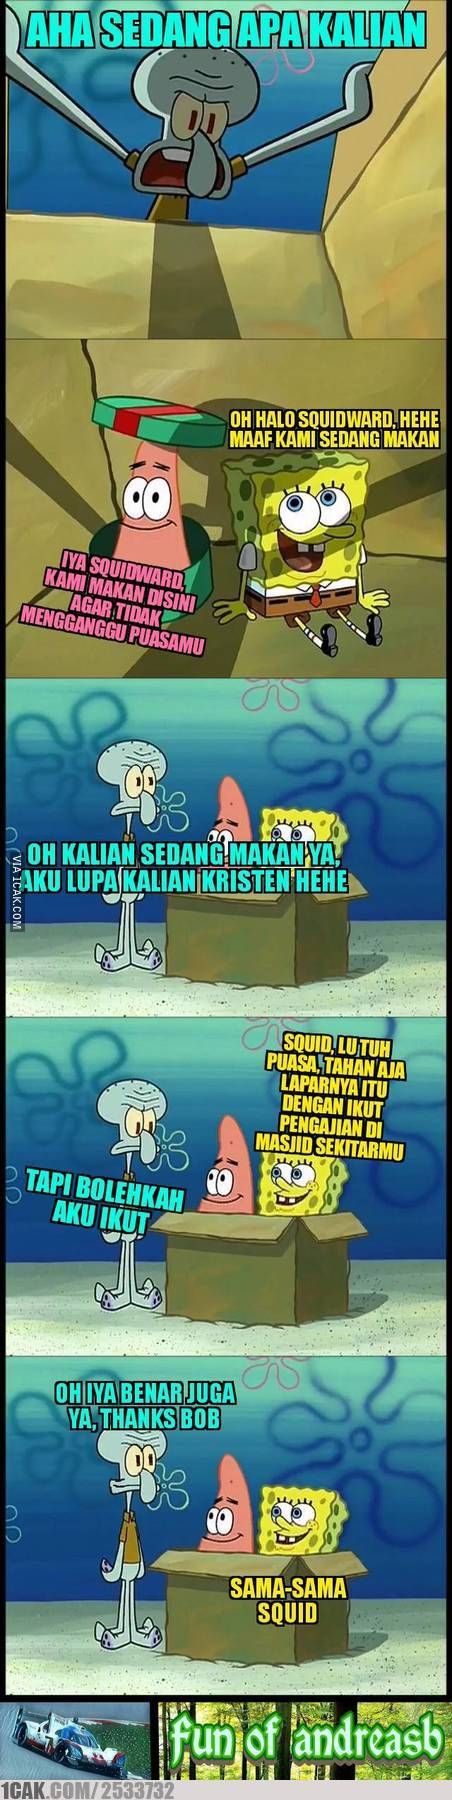 6 Meme Lucu Spongebob Ini Ajarkan Toleransi